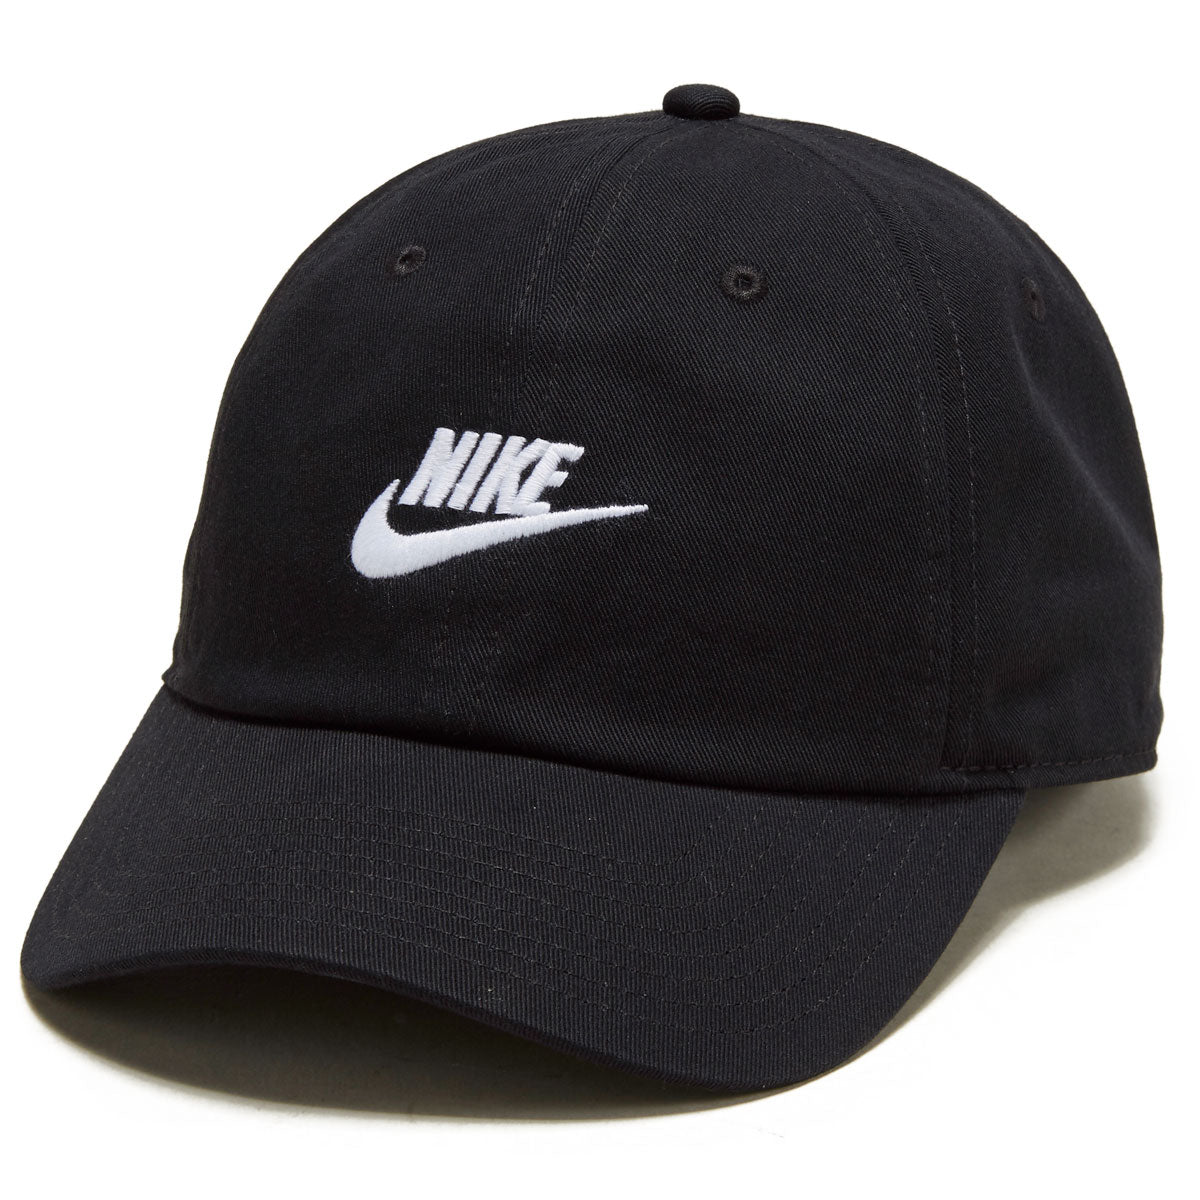 Nike SB Futbol Club Hat - Black/White image 1